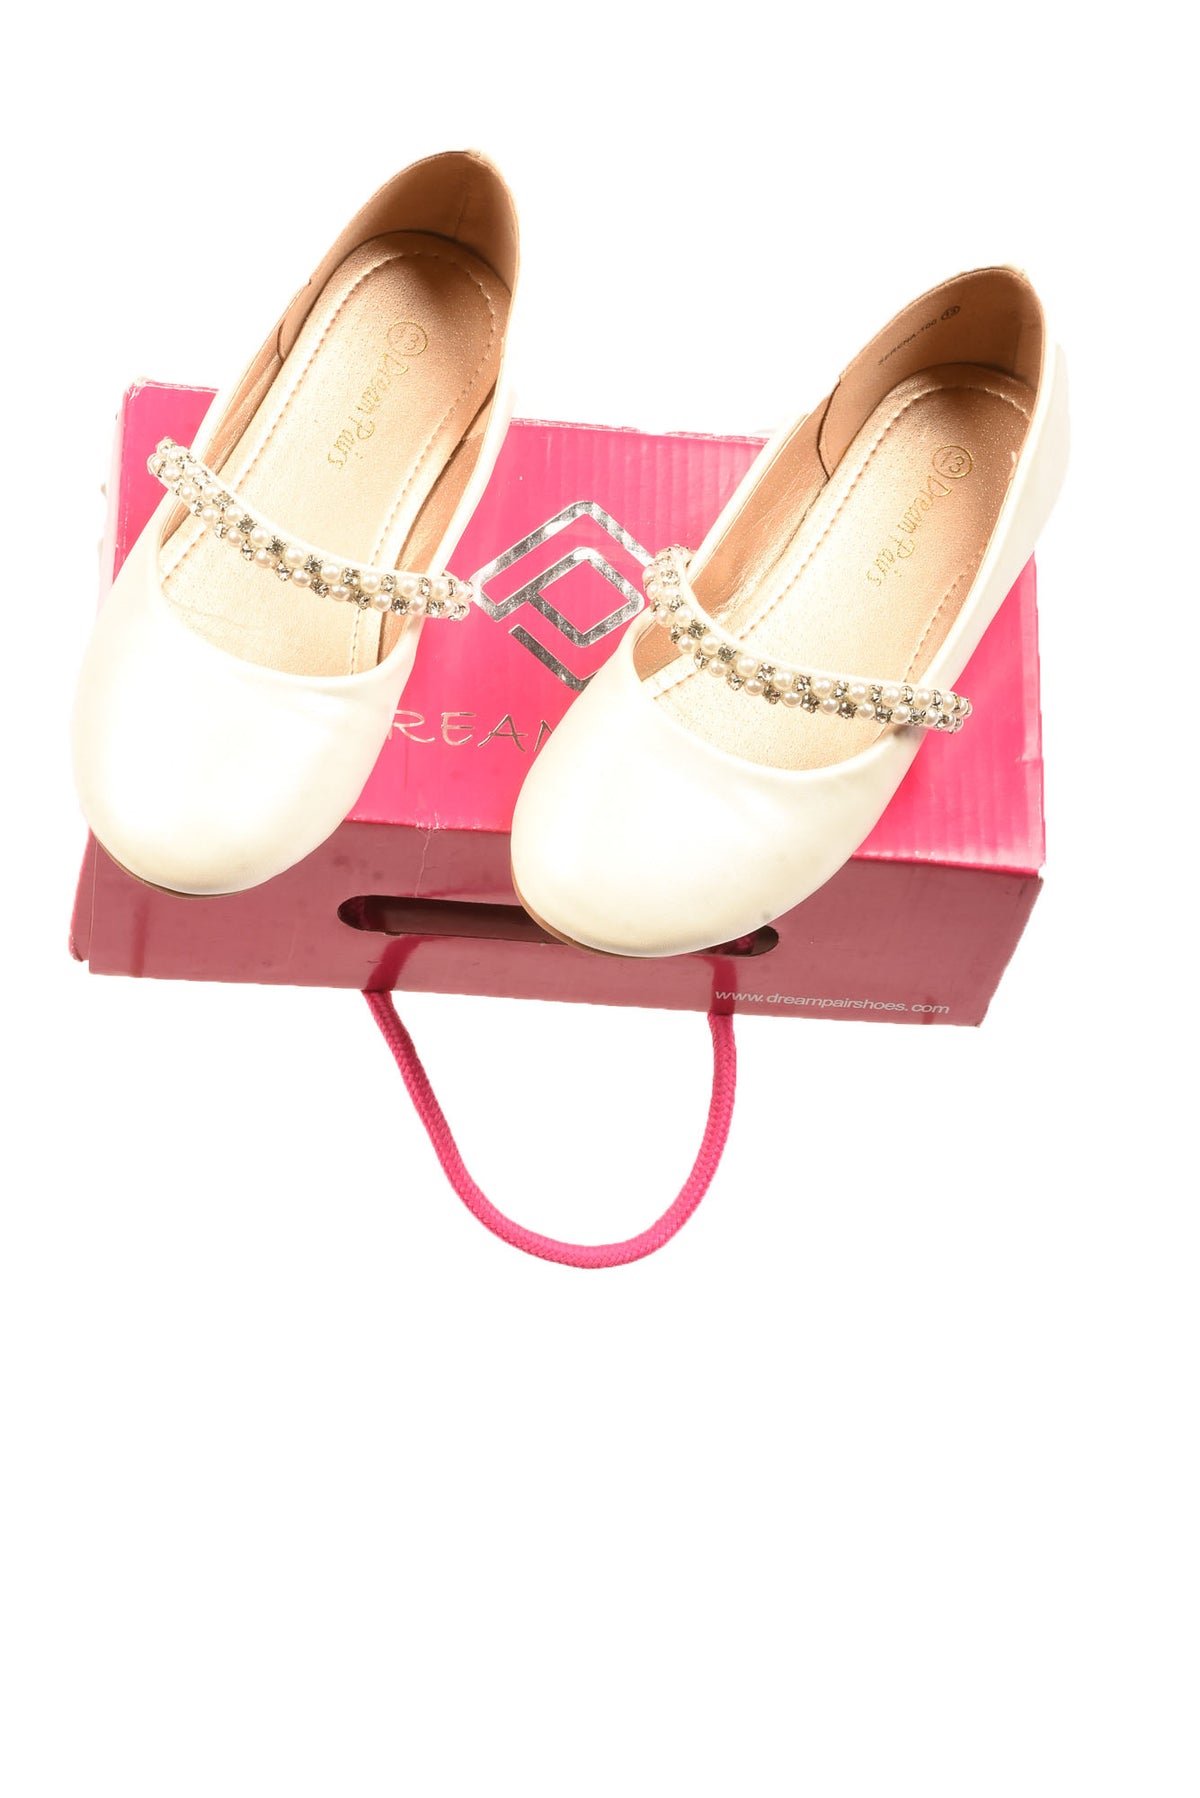 Dream Paris Size 13 Girl&#39;s Shoes